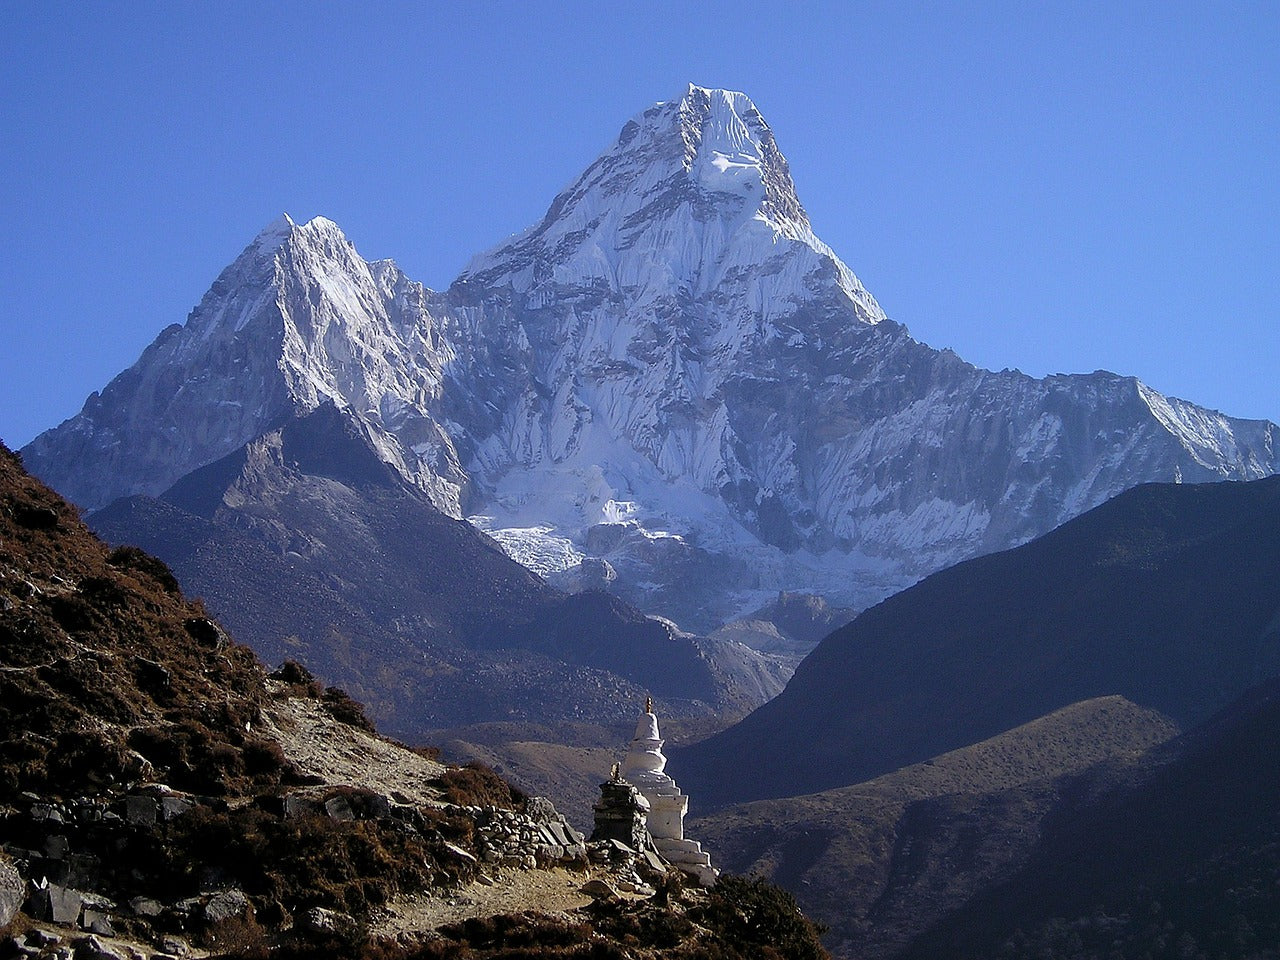 KRISTALLSALZ aus den Ausläufern des Himalaya, grob gemahlen